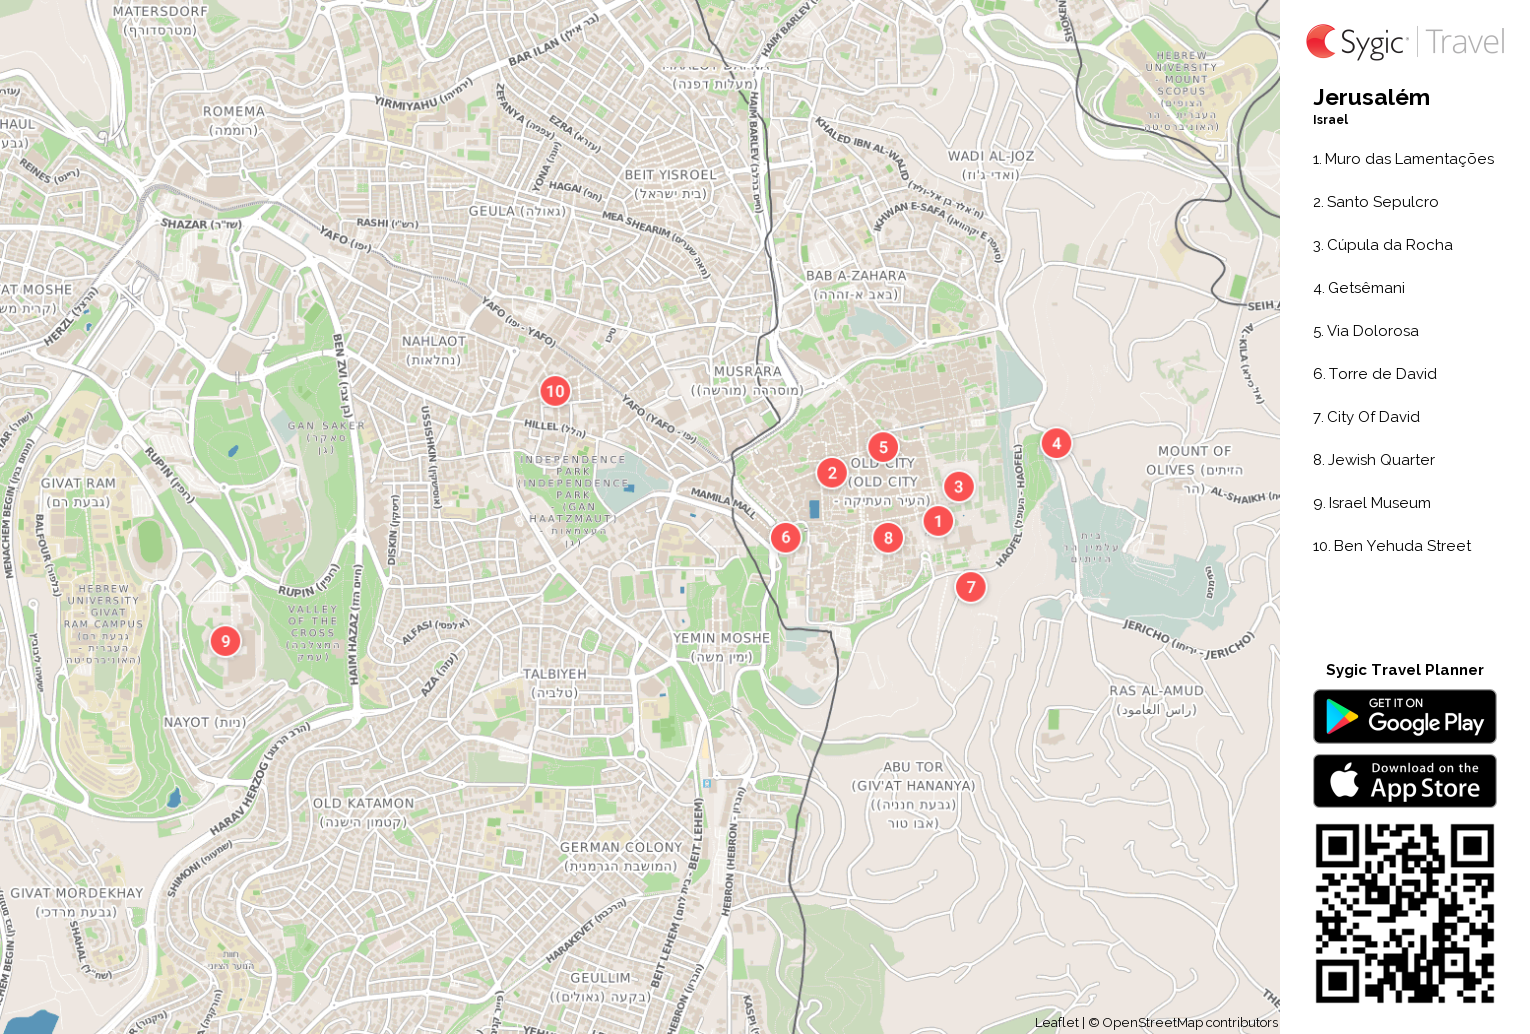 jerusalem-mapa-turistico-em-pdf